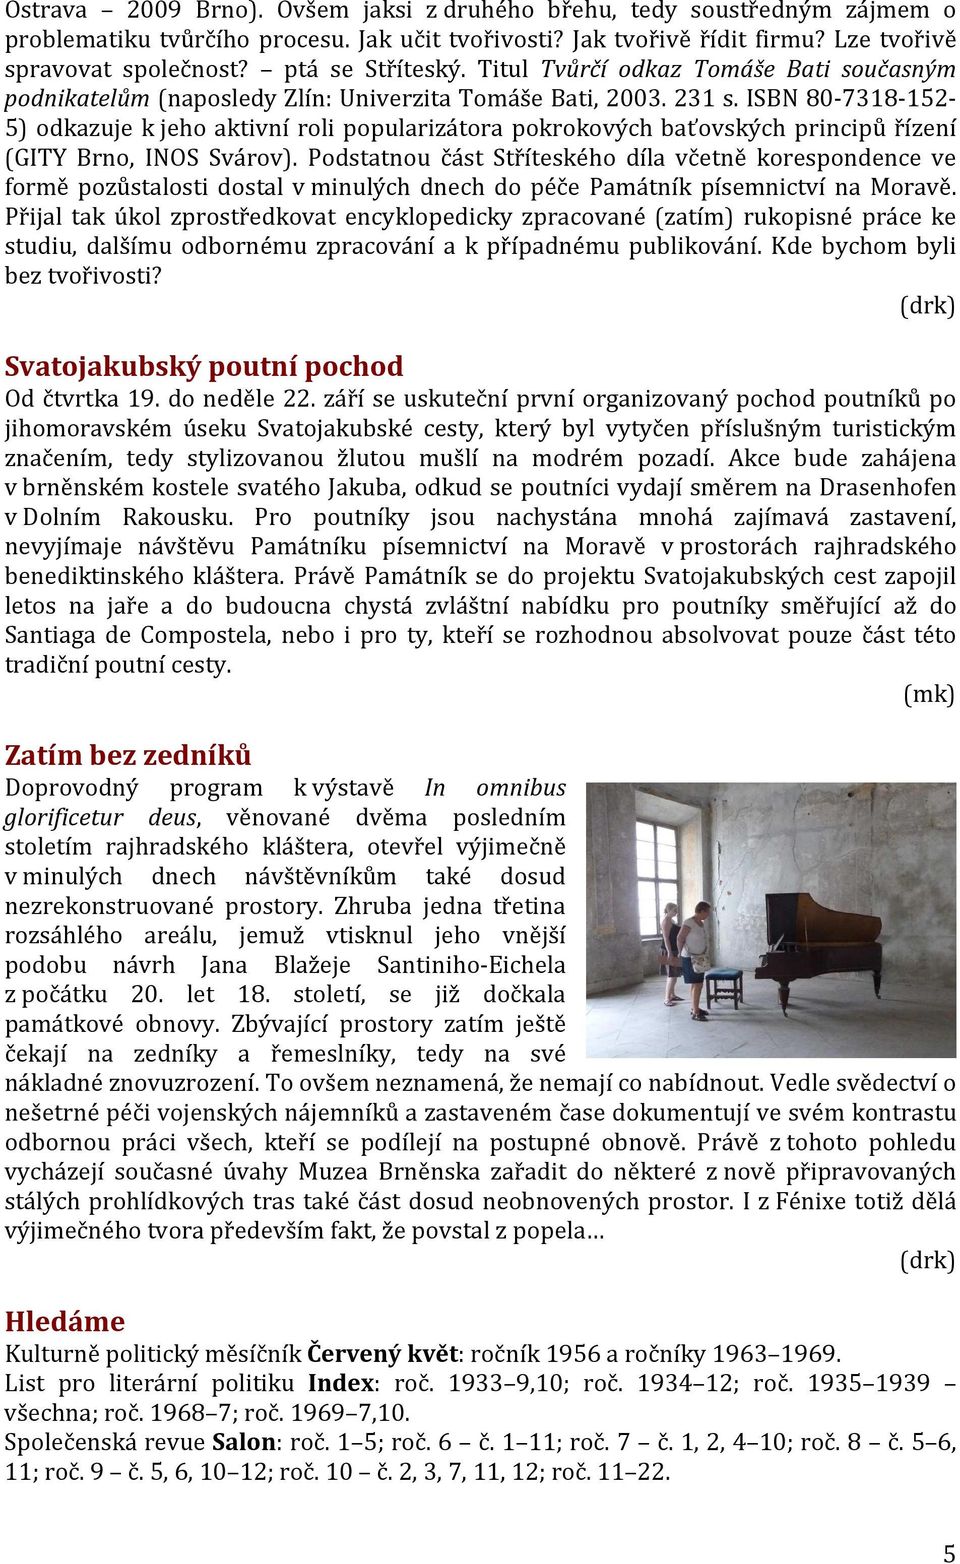 ISBN 80-7318-152-5) odkazuje k jeho aktivní roli popularizátora pokrokových baťovských principů řízení (GITY Brno, INOS Svárov).